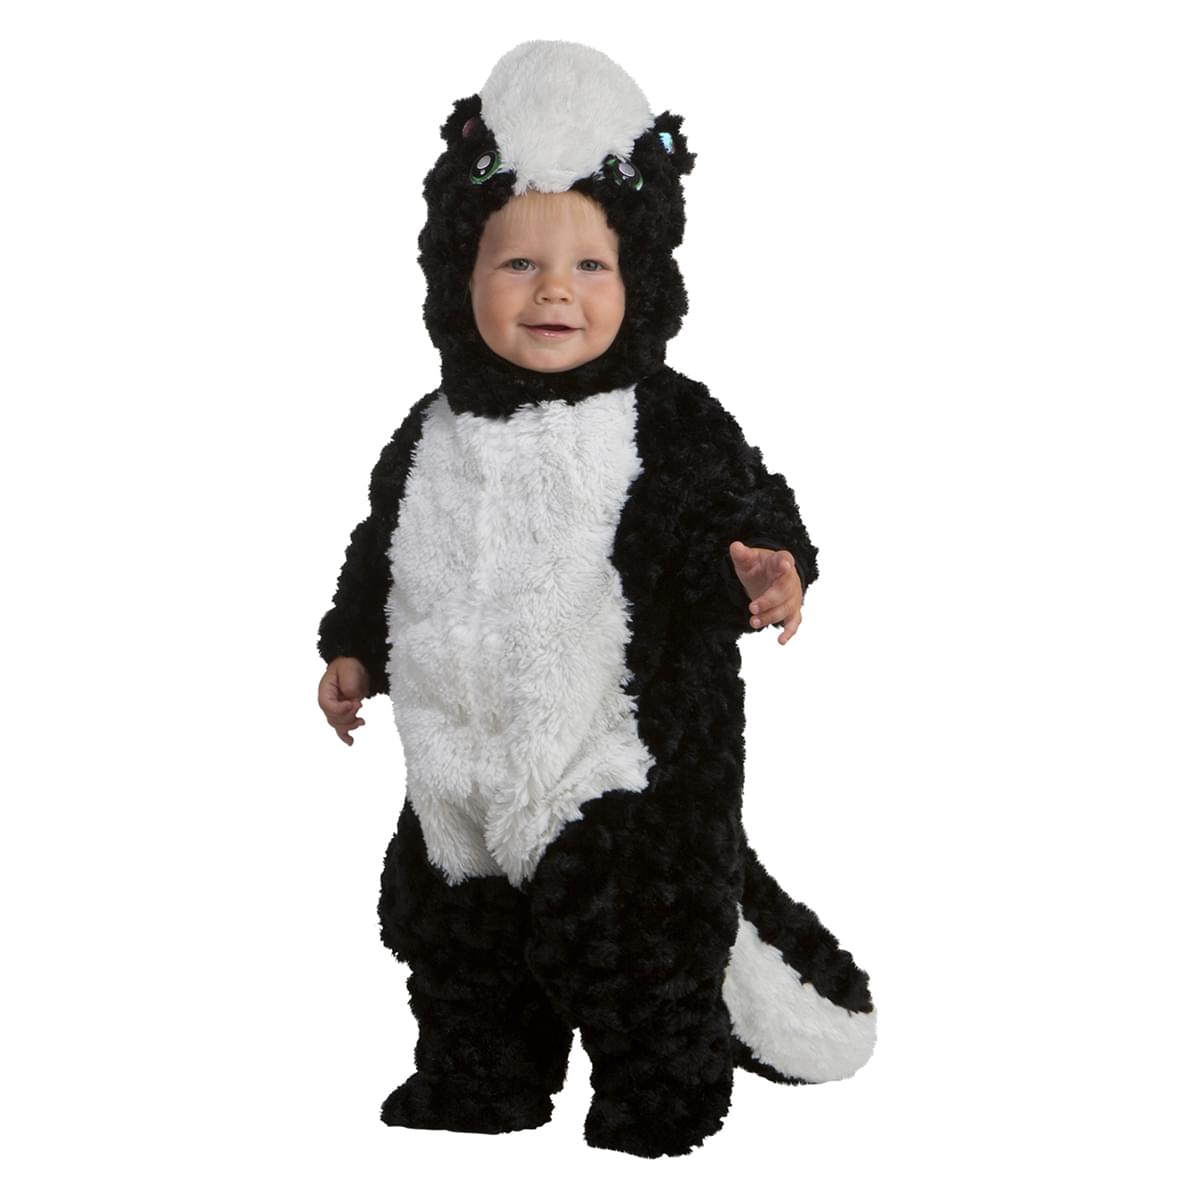 Precious Skunk Infant Costume